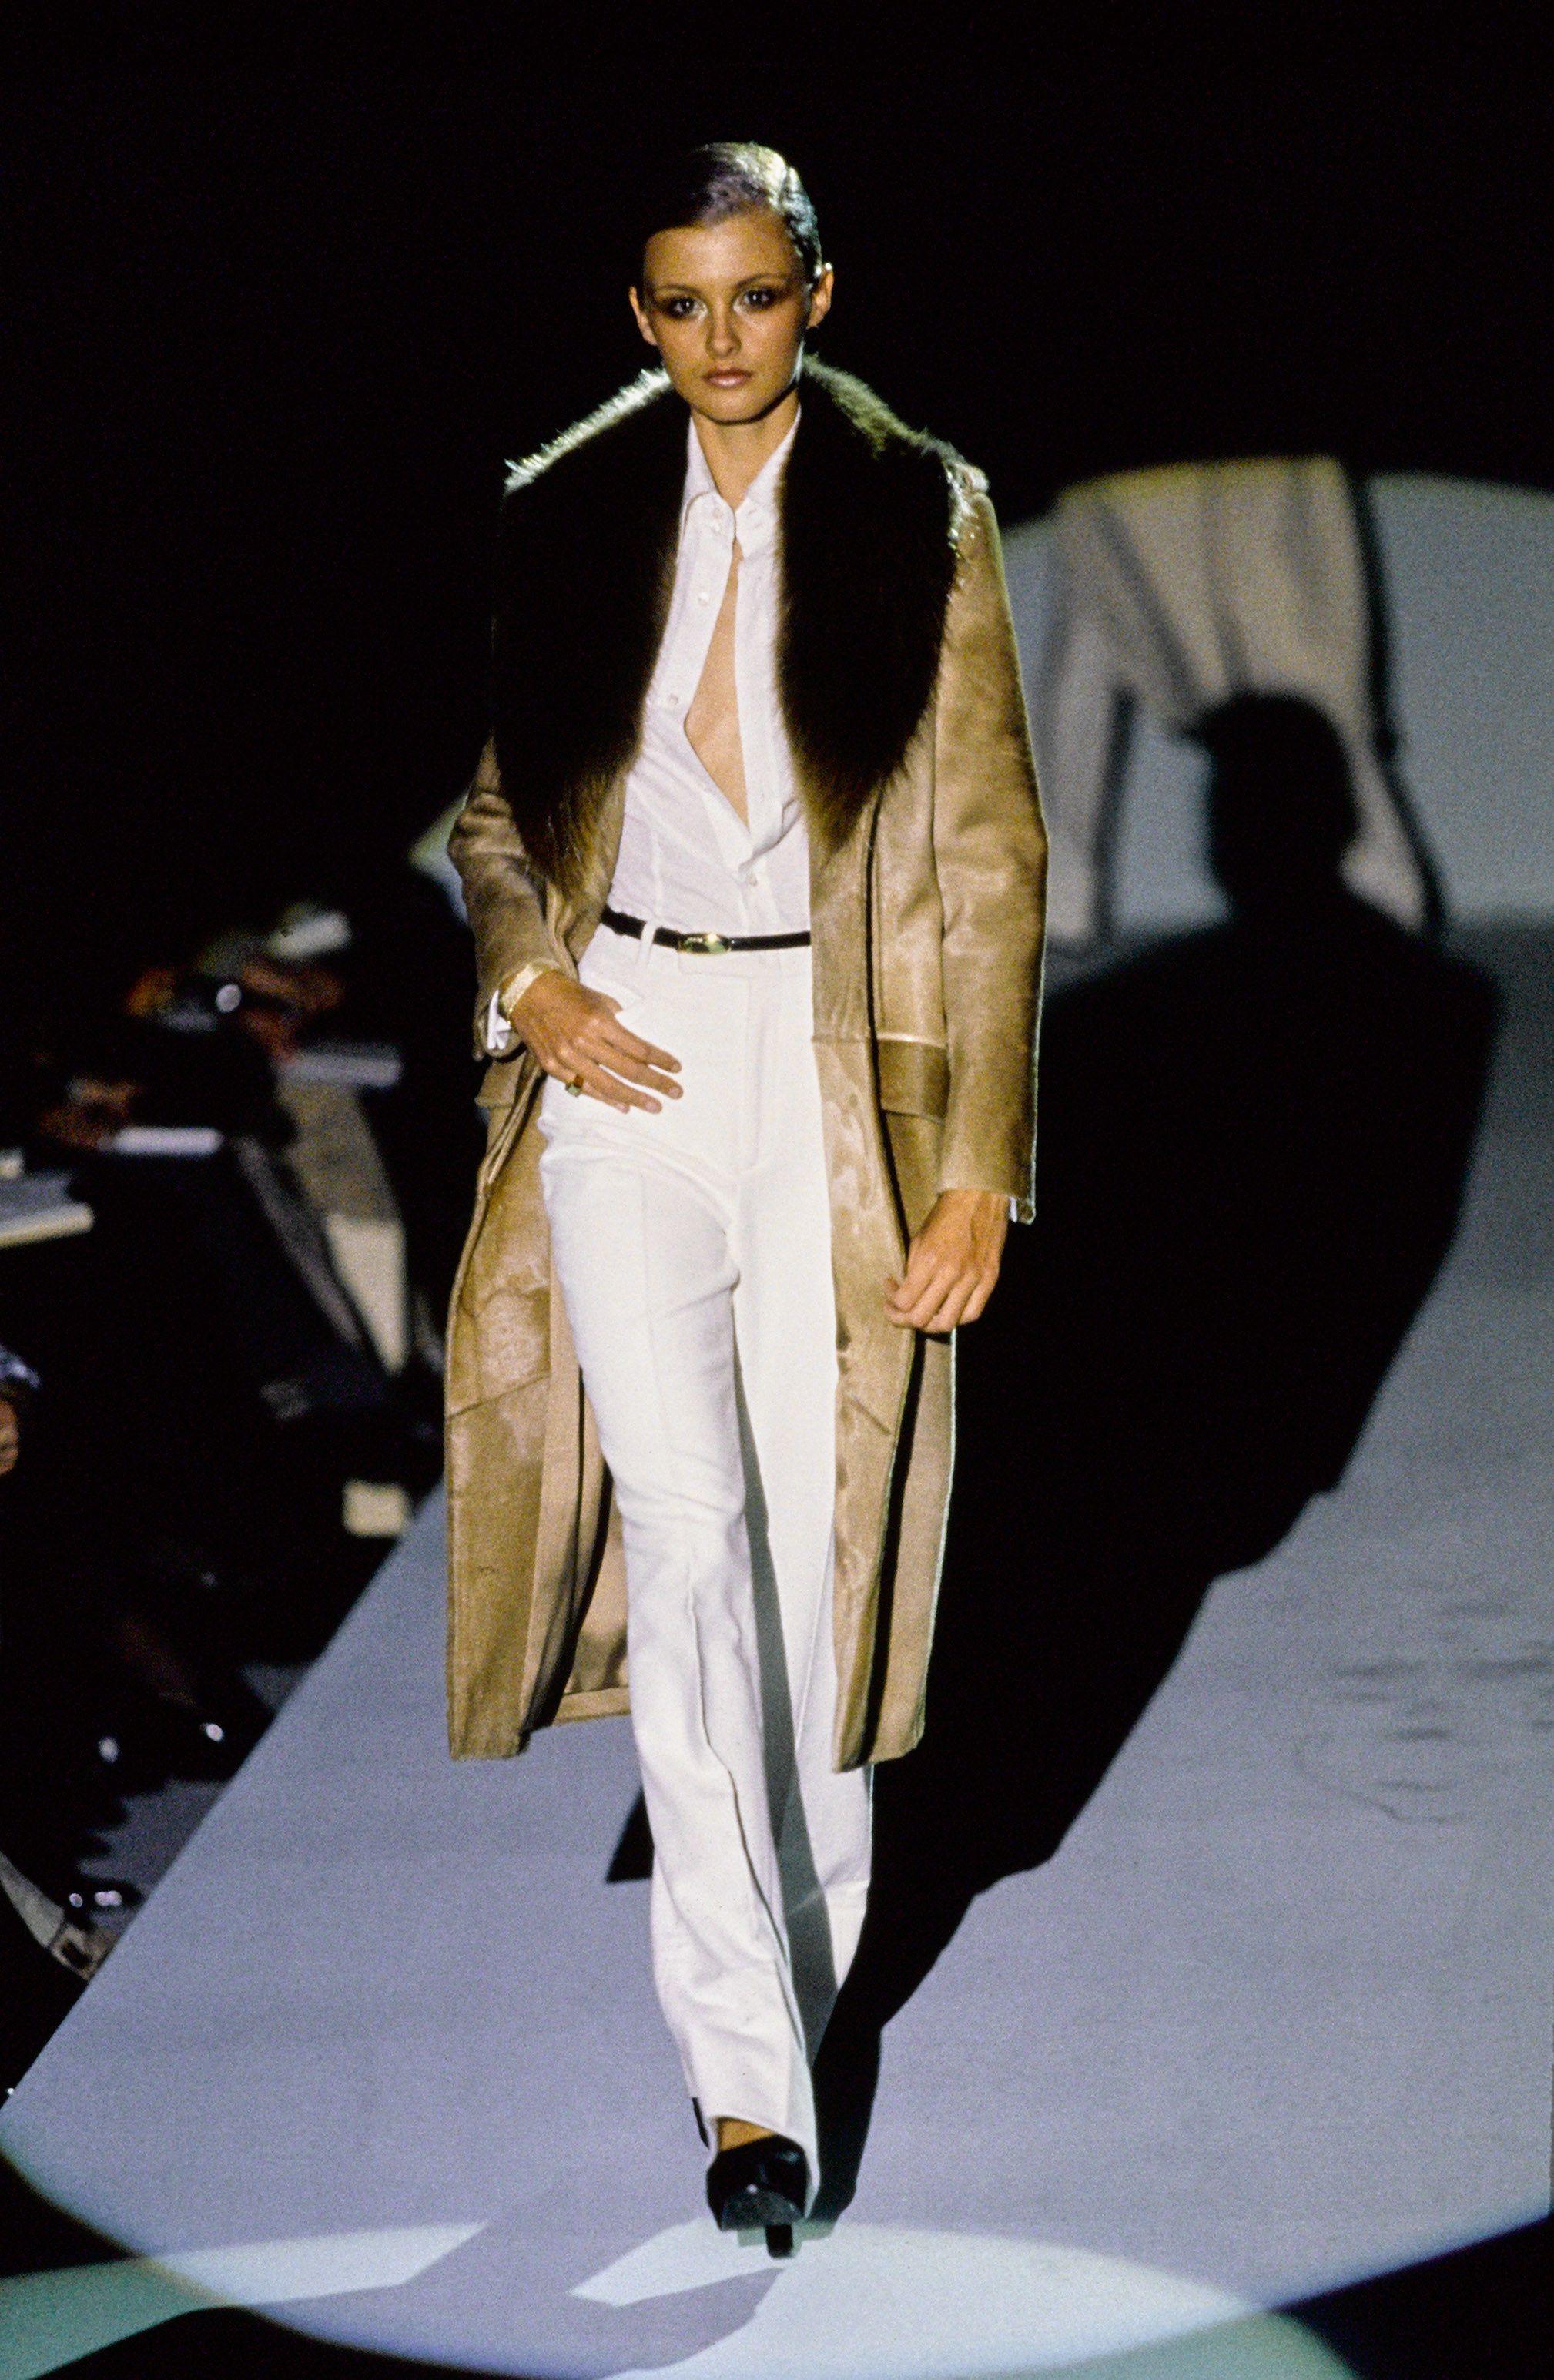 Défilé F/H 1996 Tom Ford pour Gucci Manteau en cuir et fourrure 
Rare et emblématique ! Un must pour les collectionneurs !
Pas d'étiquette de taille (il s'agit peut-être d'un échantillon de défilé), taille S environ.
Cuir de vache, fourrure,